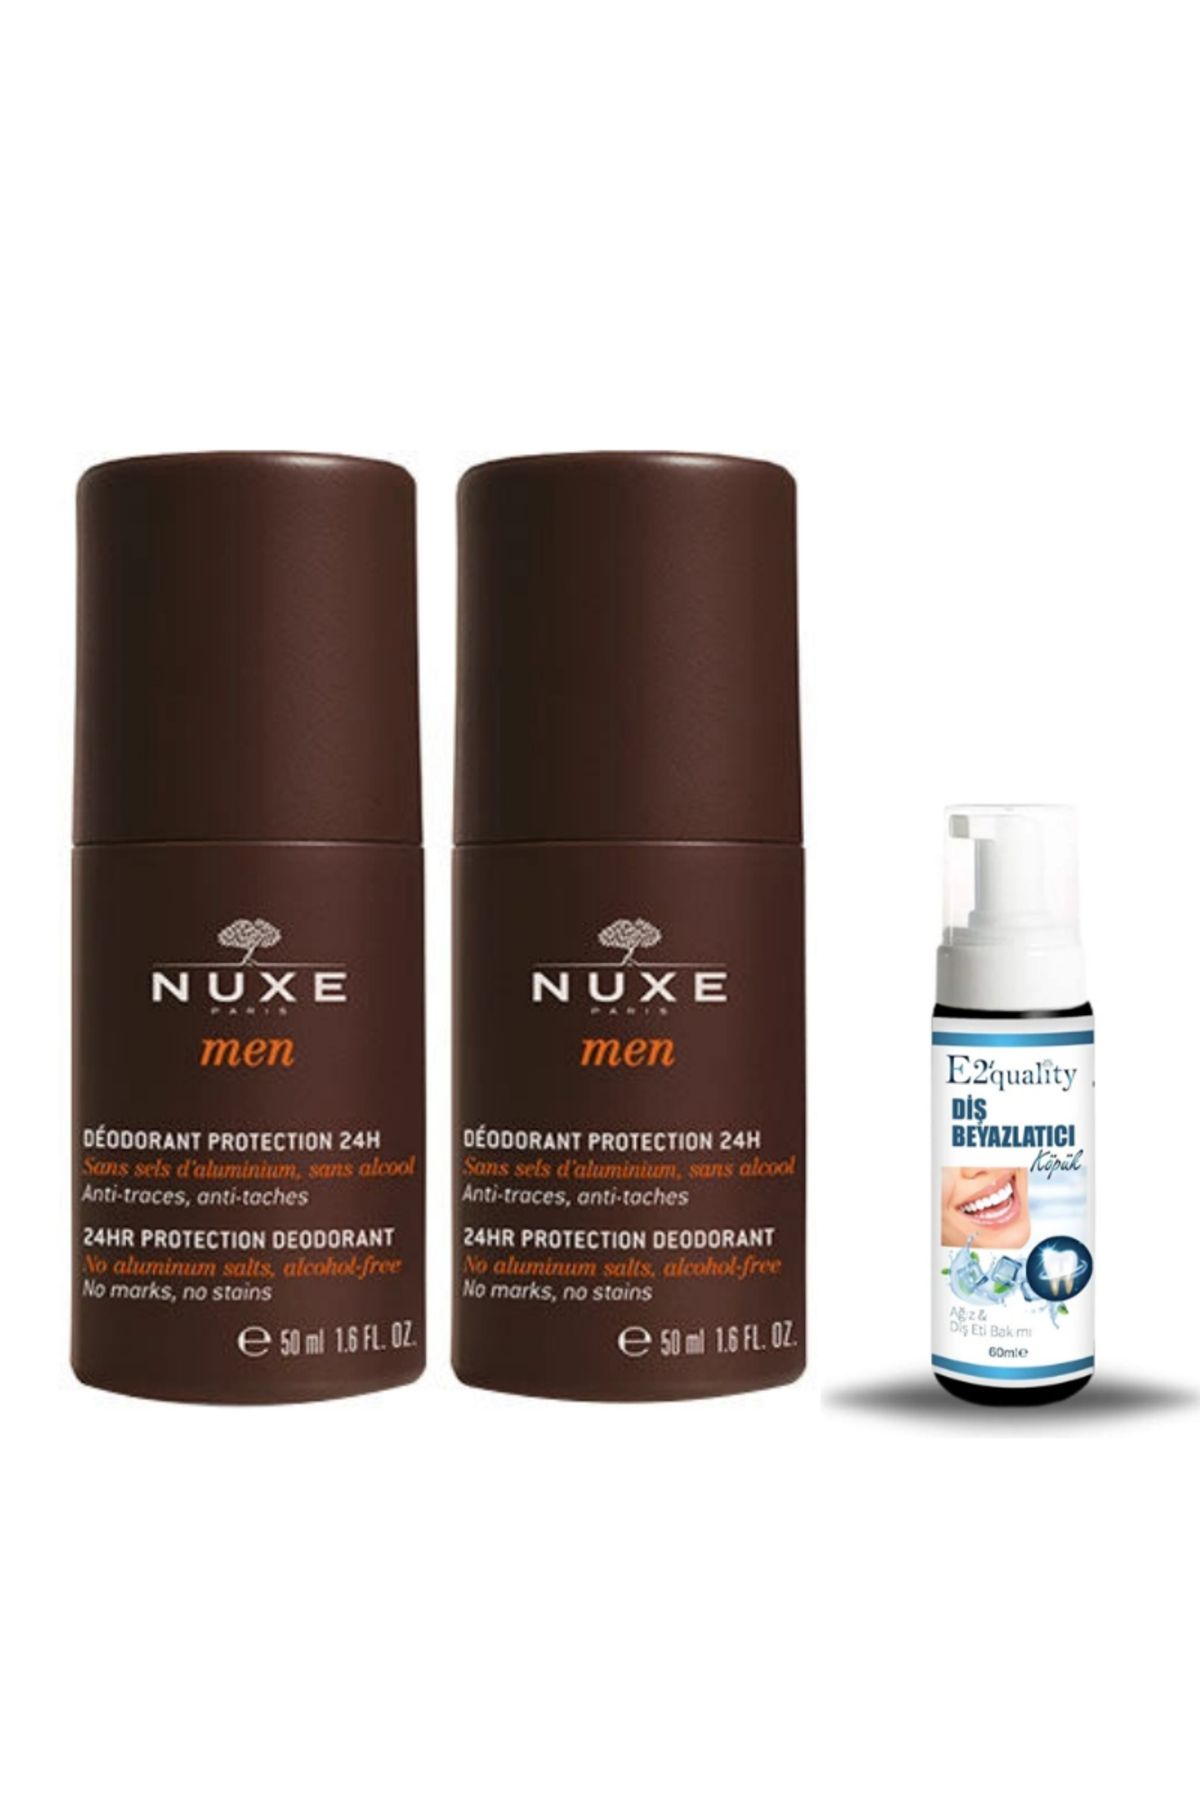 Nuxe Men Deodorant 2x50ml + Hediye Diş Beyazlatıcı Köpük